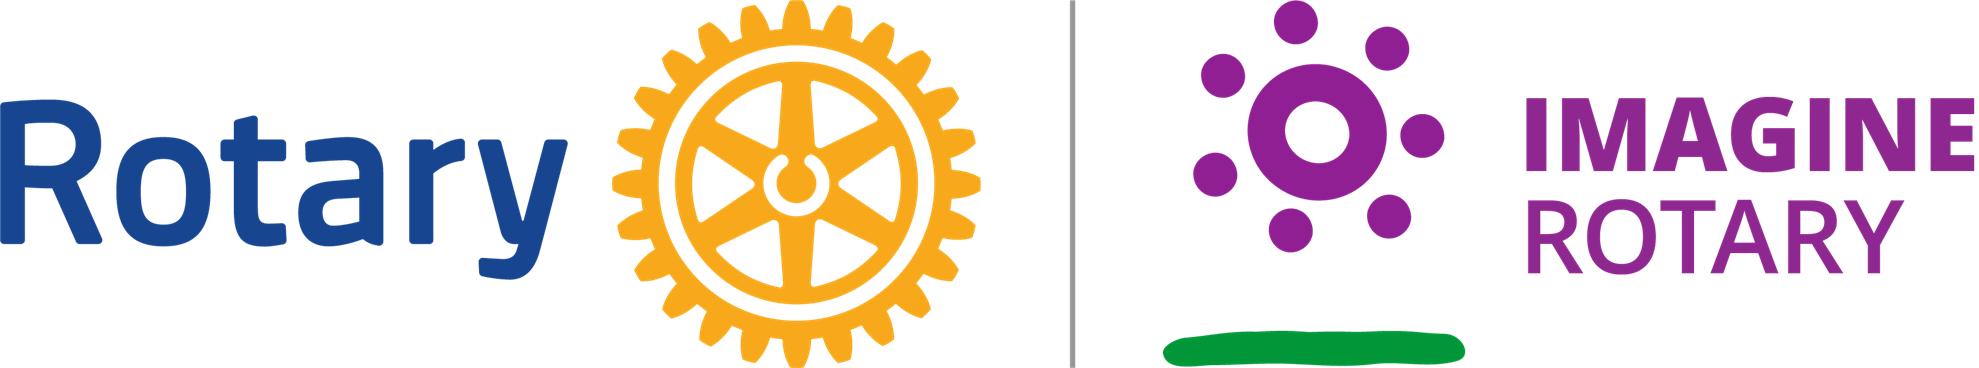 Discover more than 68 rotaract club logo best - ceg.edu.vn